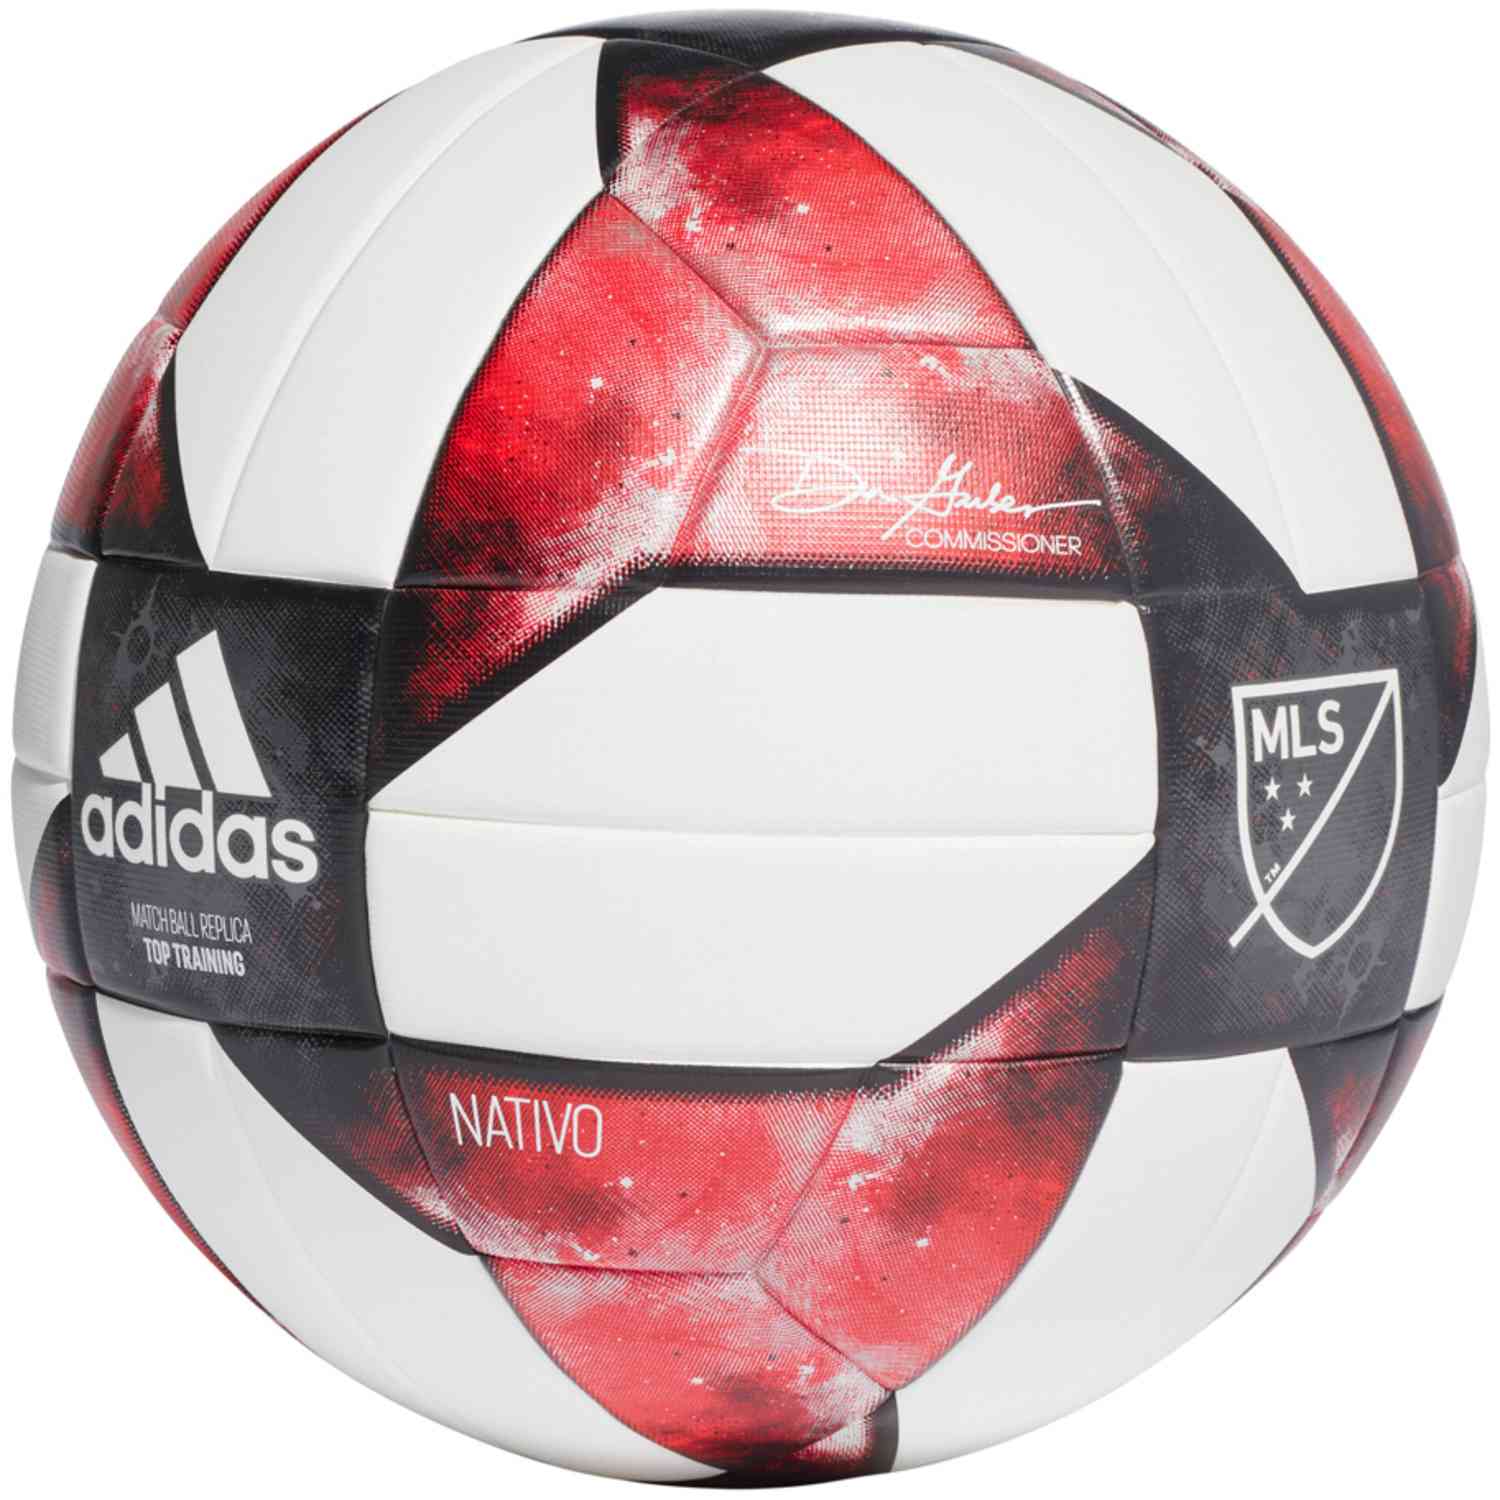 mls nativo soccer ball